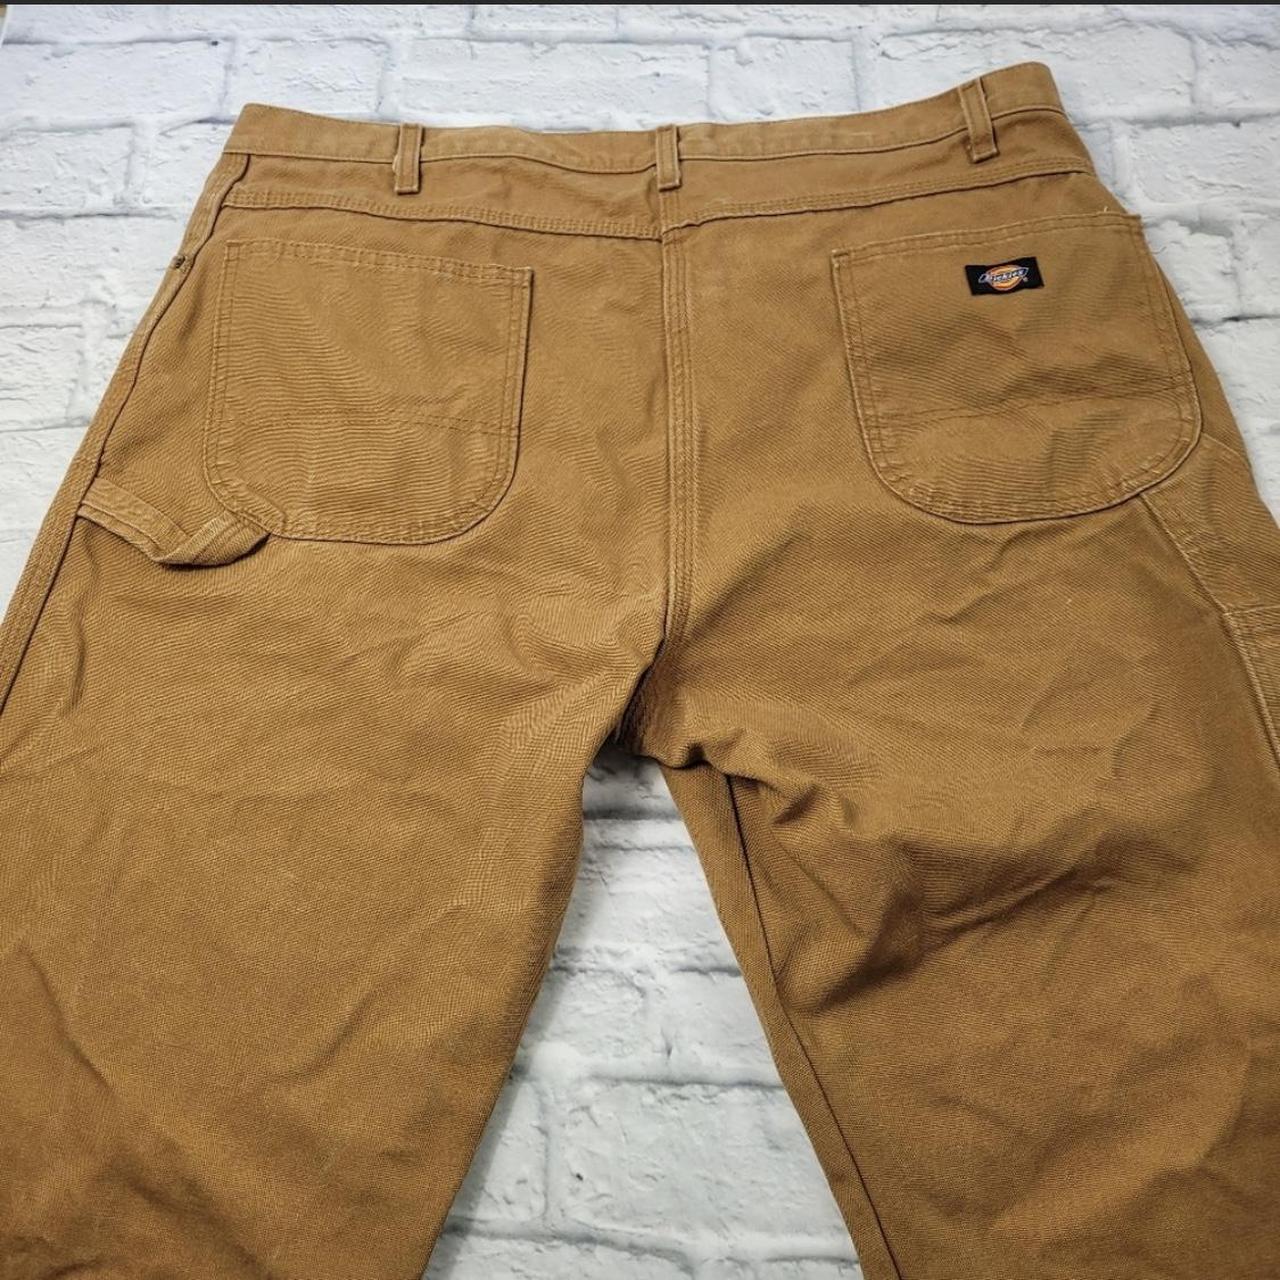 Dickies cargo pants • tan, brown color • Waist... - Depop